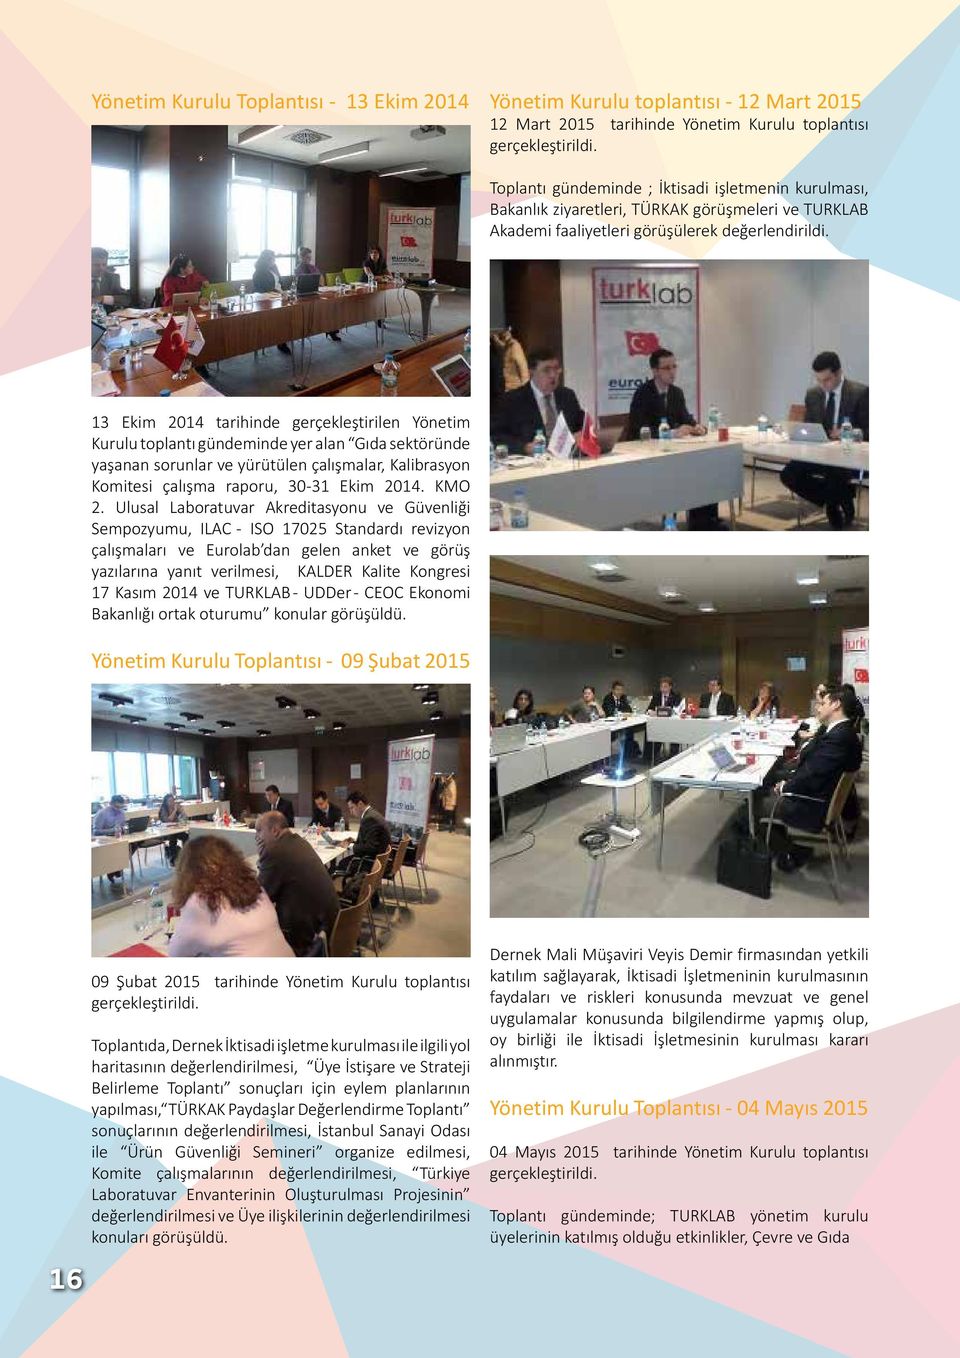 13 Ekim 2014 tarihinde gerçekleştirilen Yönetim Kurulu toplantı gündeminde yer alan Gıda sektöründe yaşanan sorunlar ve yürütülen çalışmalar, Kalibrasyon Komitesi çalışma raporu, 30-31 Ekim 2014.